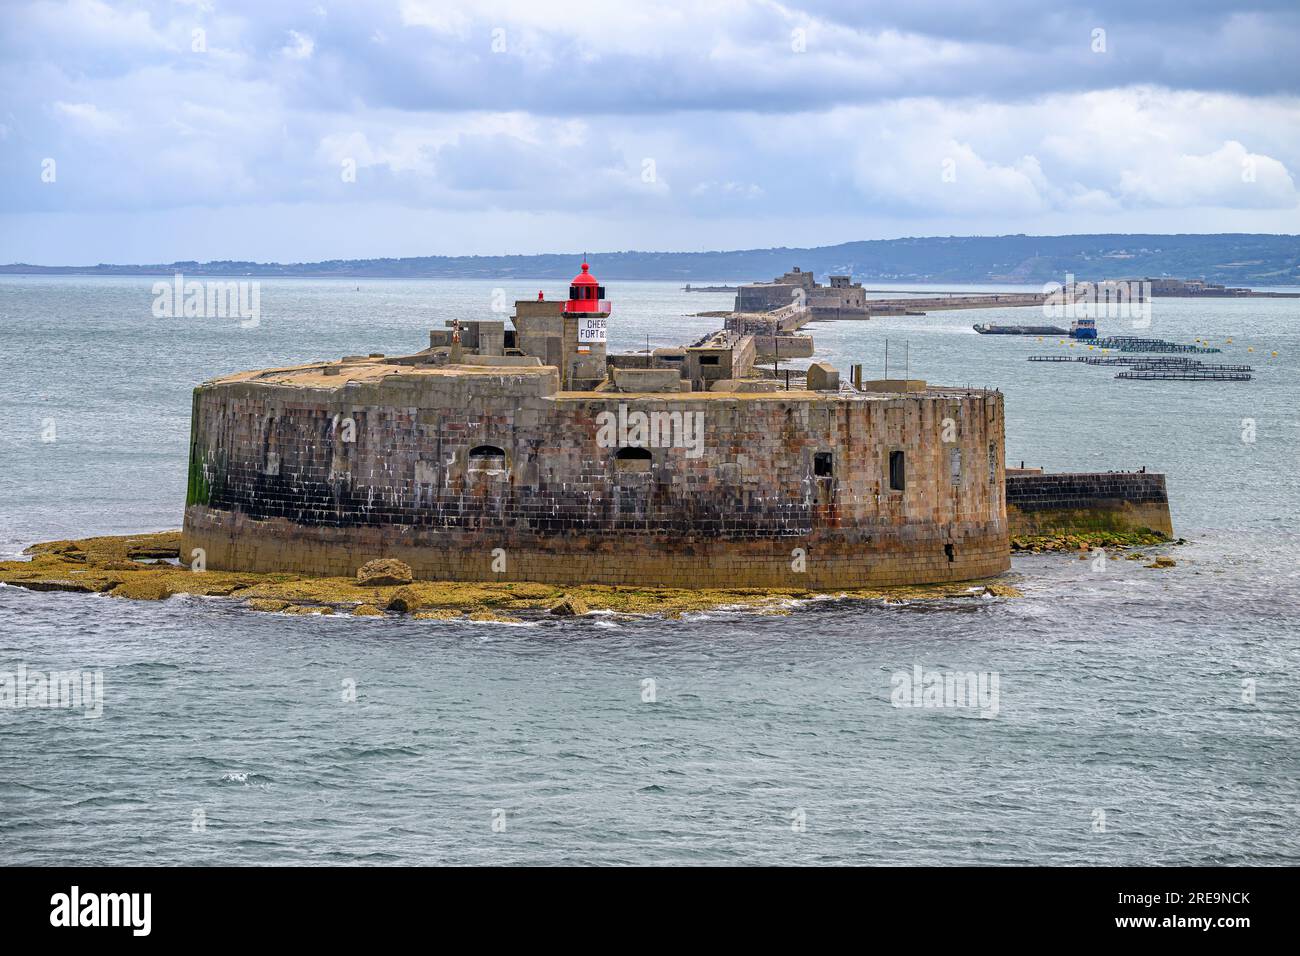 Le fort Ouest situé aux abords du port de Cherbourg en Normandie, France. Banque D'Images